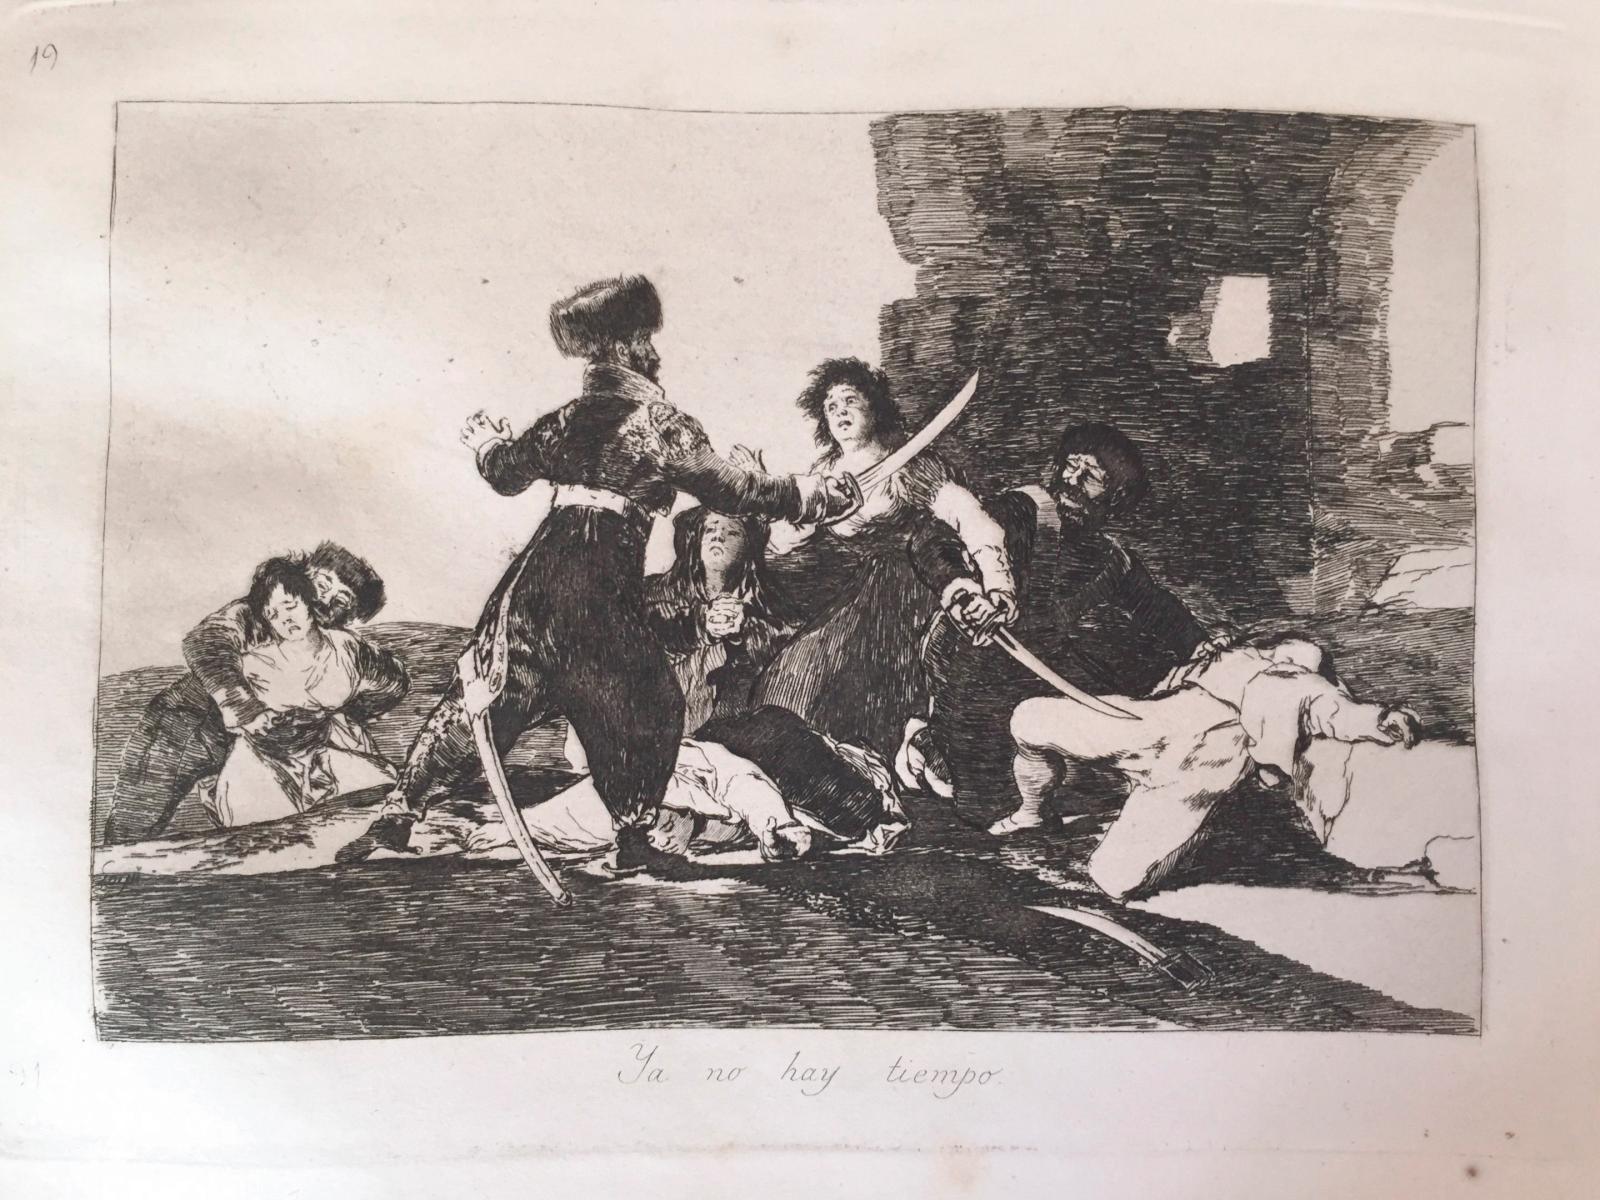 Francisco de Goya, chroniqueur de guerre